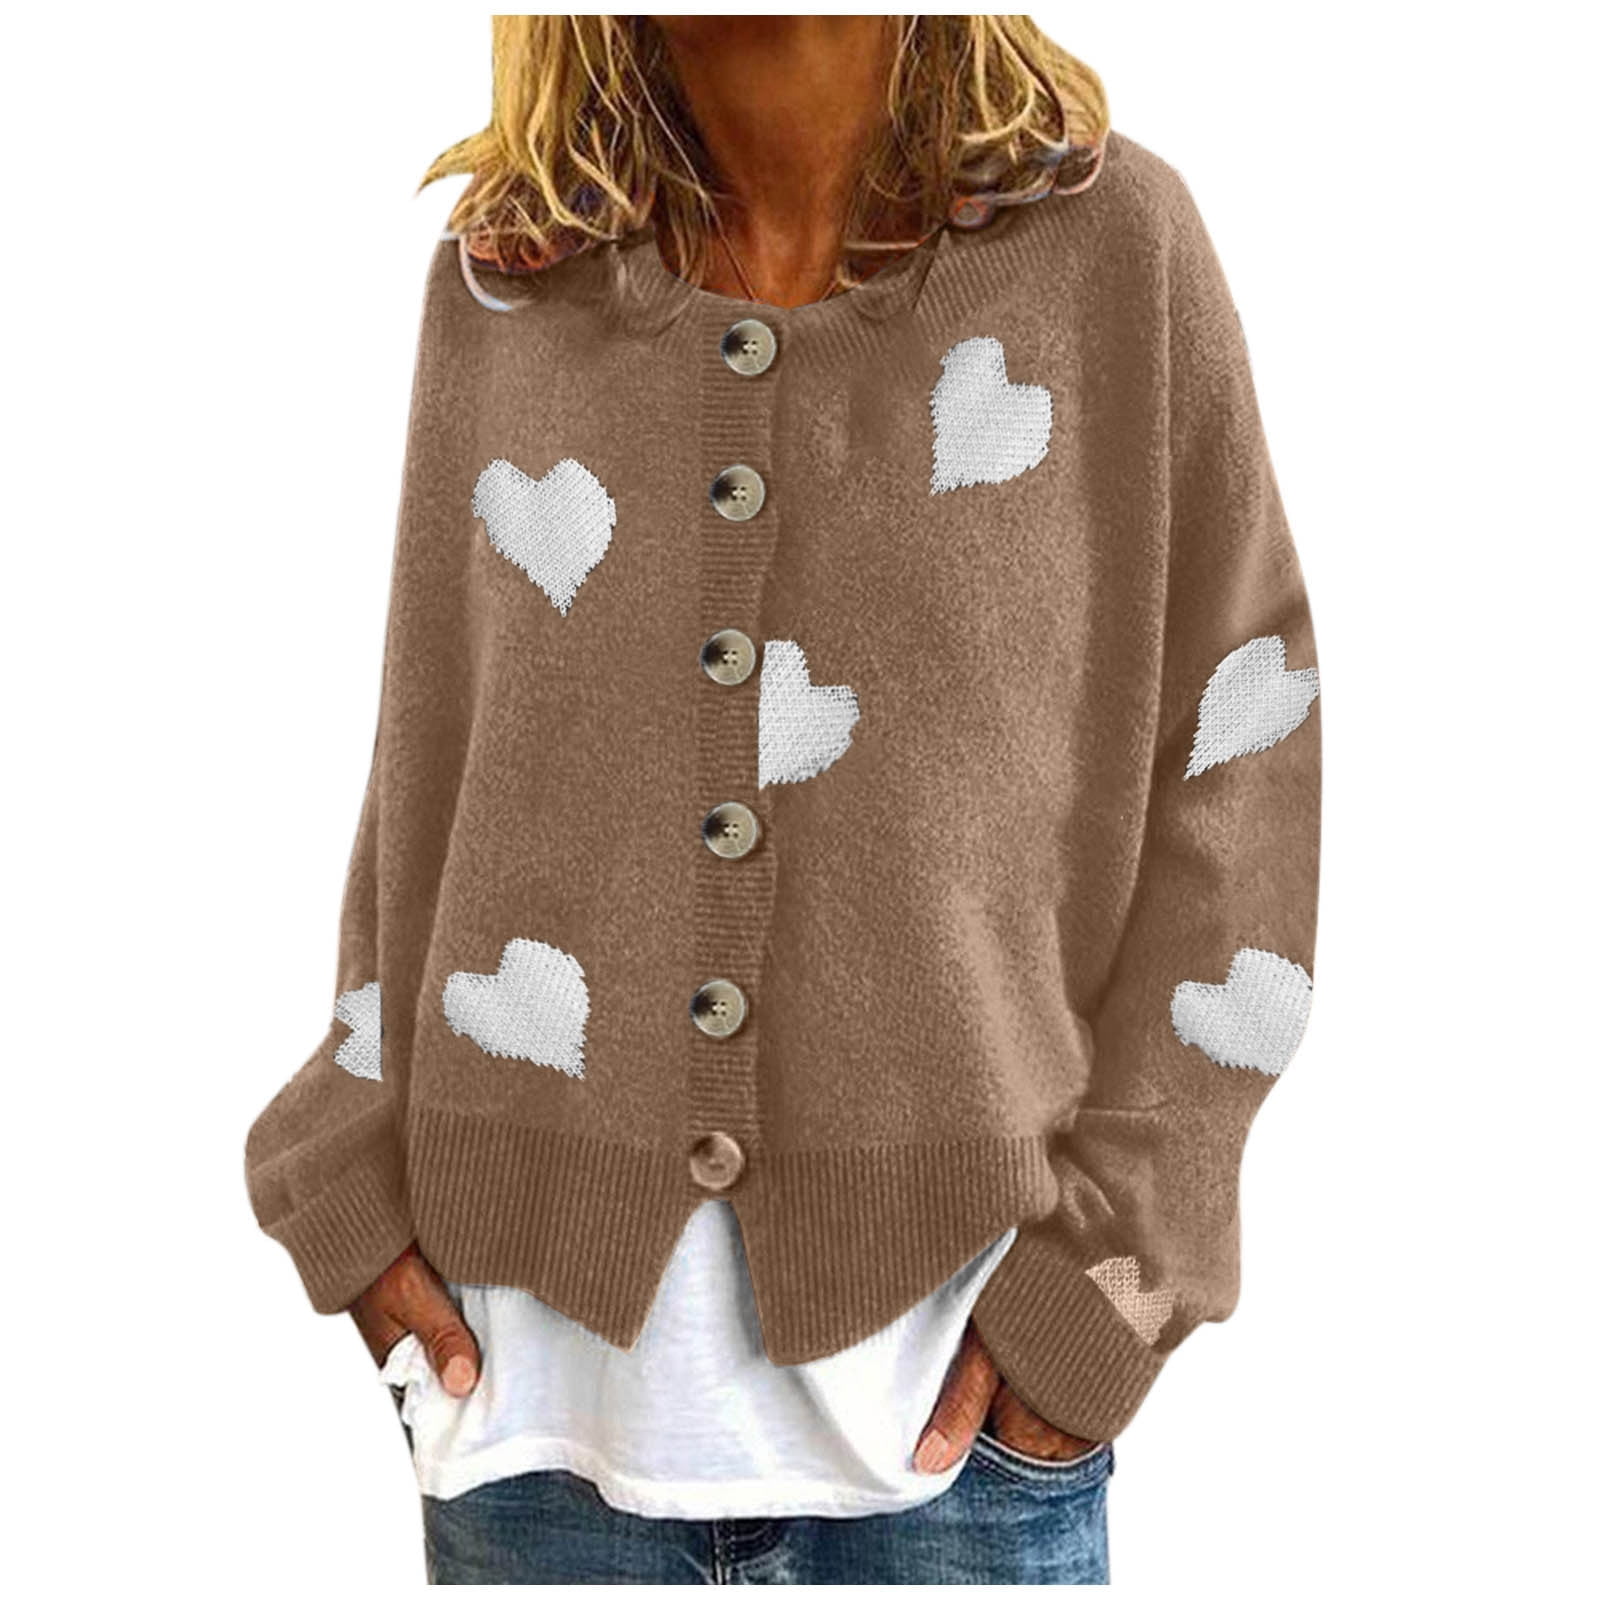 Women's Knitwear Single- Love Sweater Women's Cardigan Long Wrap Long ...